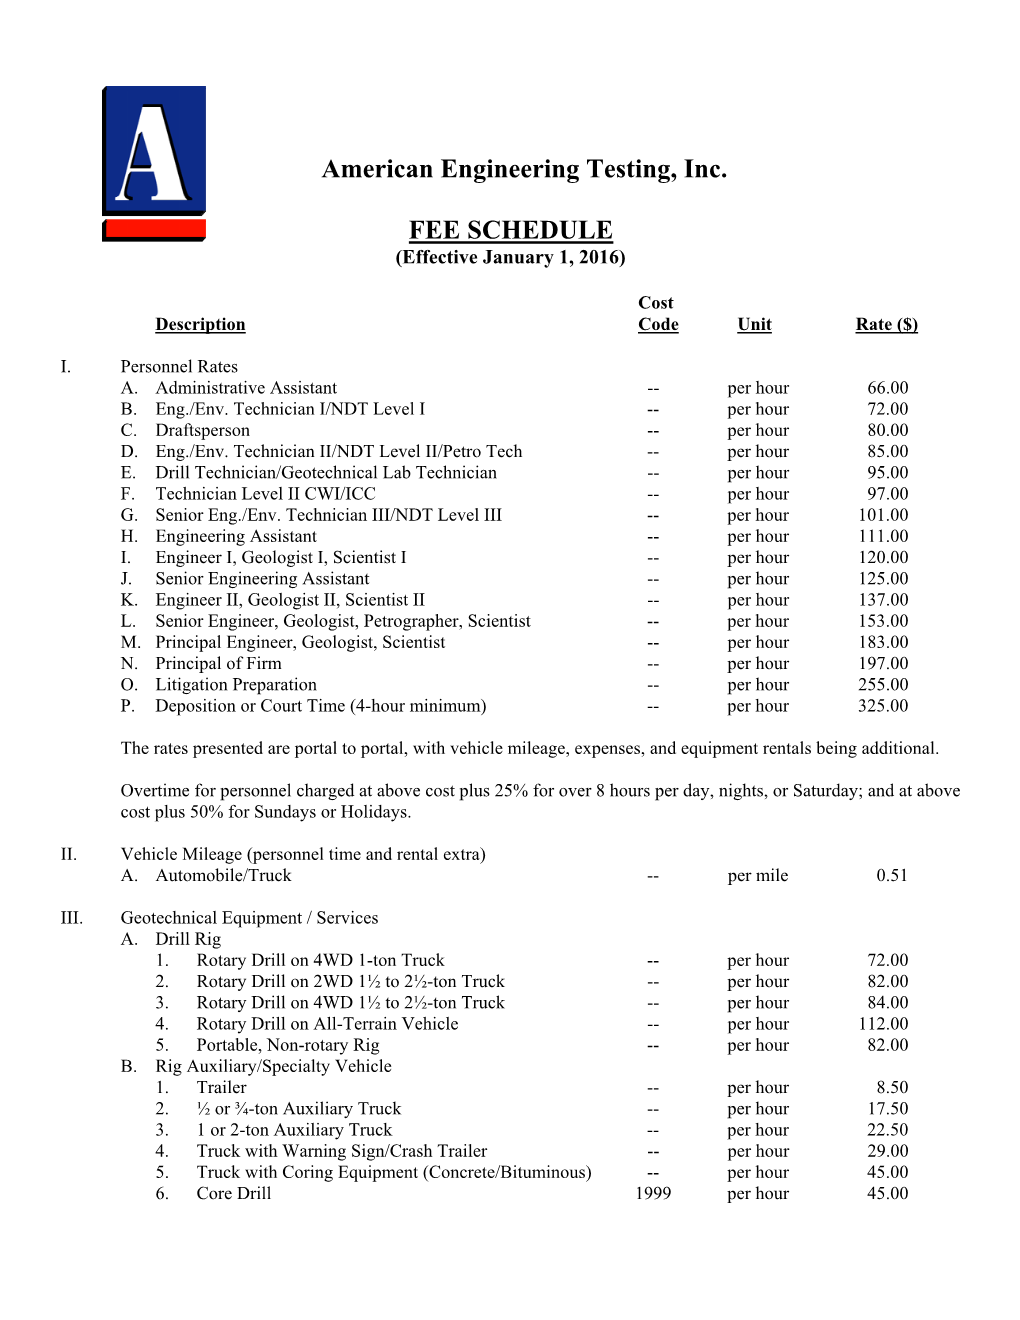 American Engineering Testing, Inc. FEE SCHEDULE